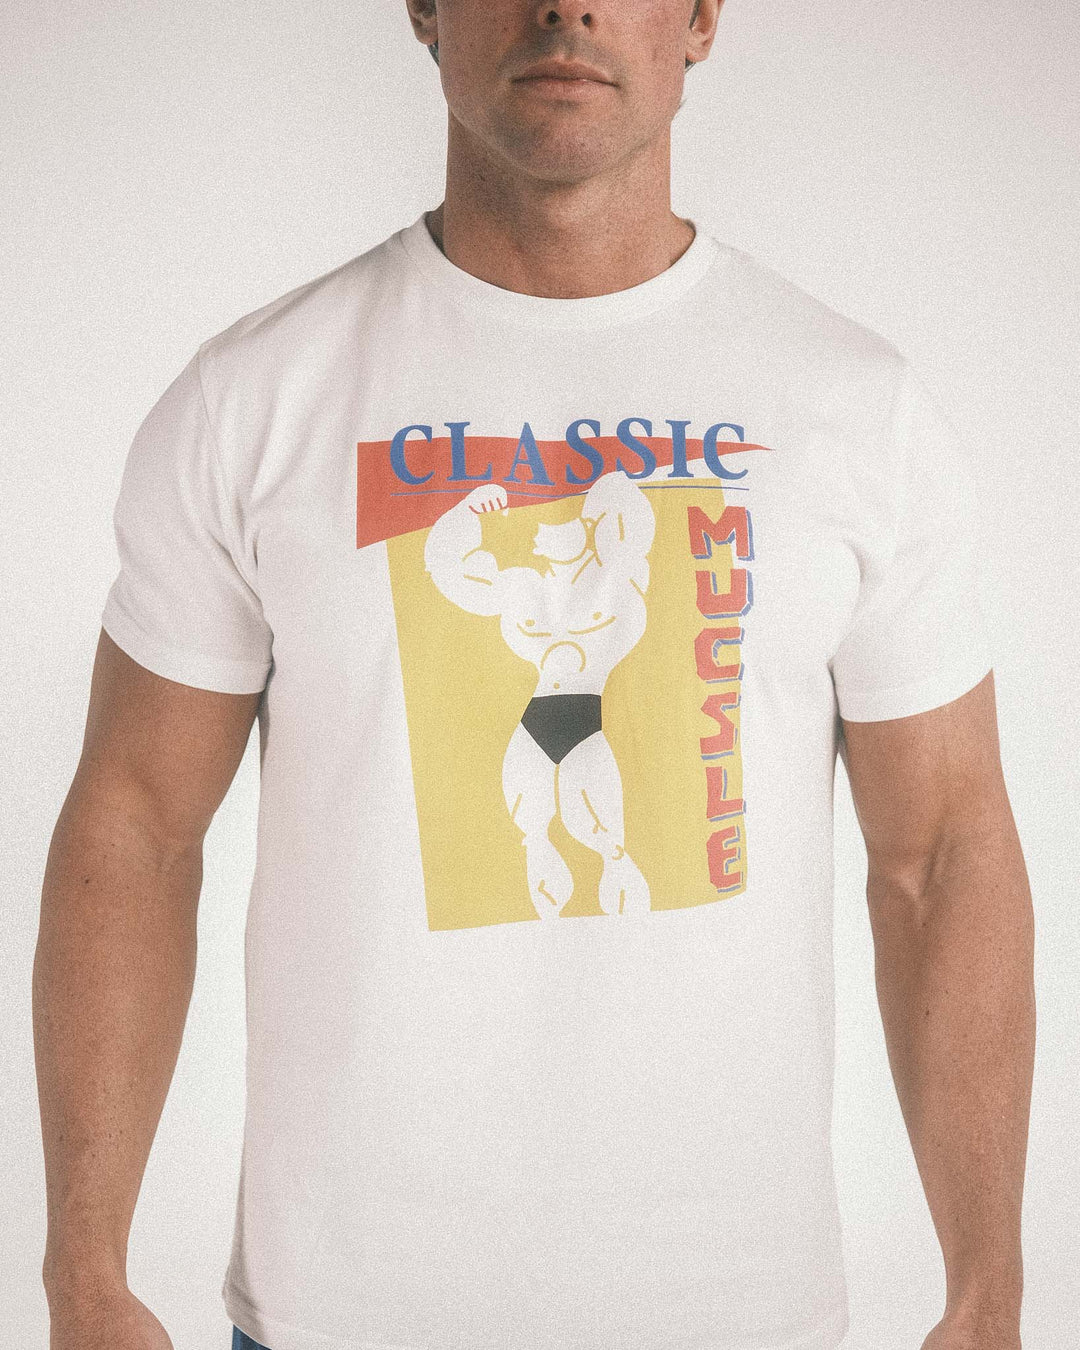 Vintage Fitness Retro Gym Group Crew Neck Men's T-Shirt White XX-Large :  : Fashion